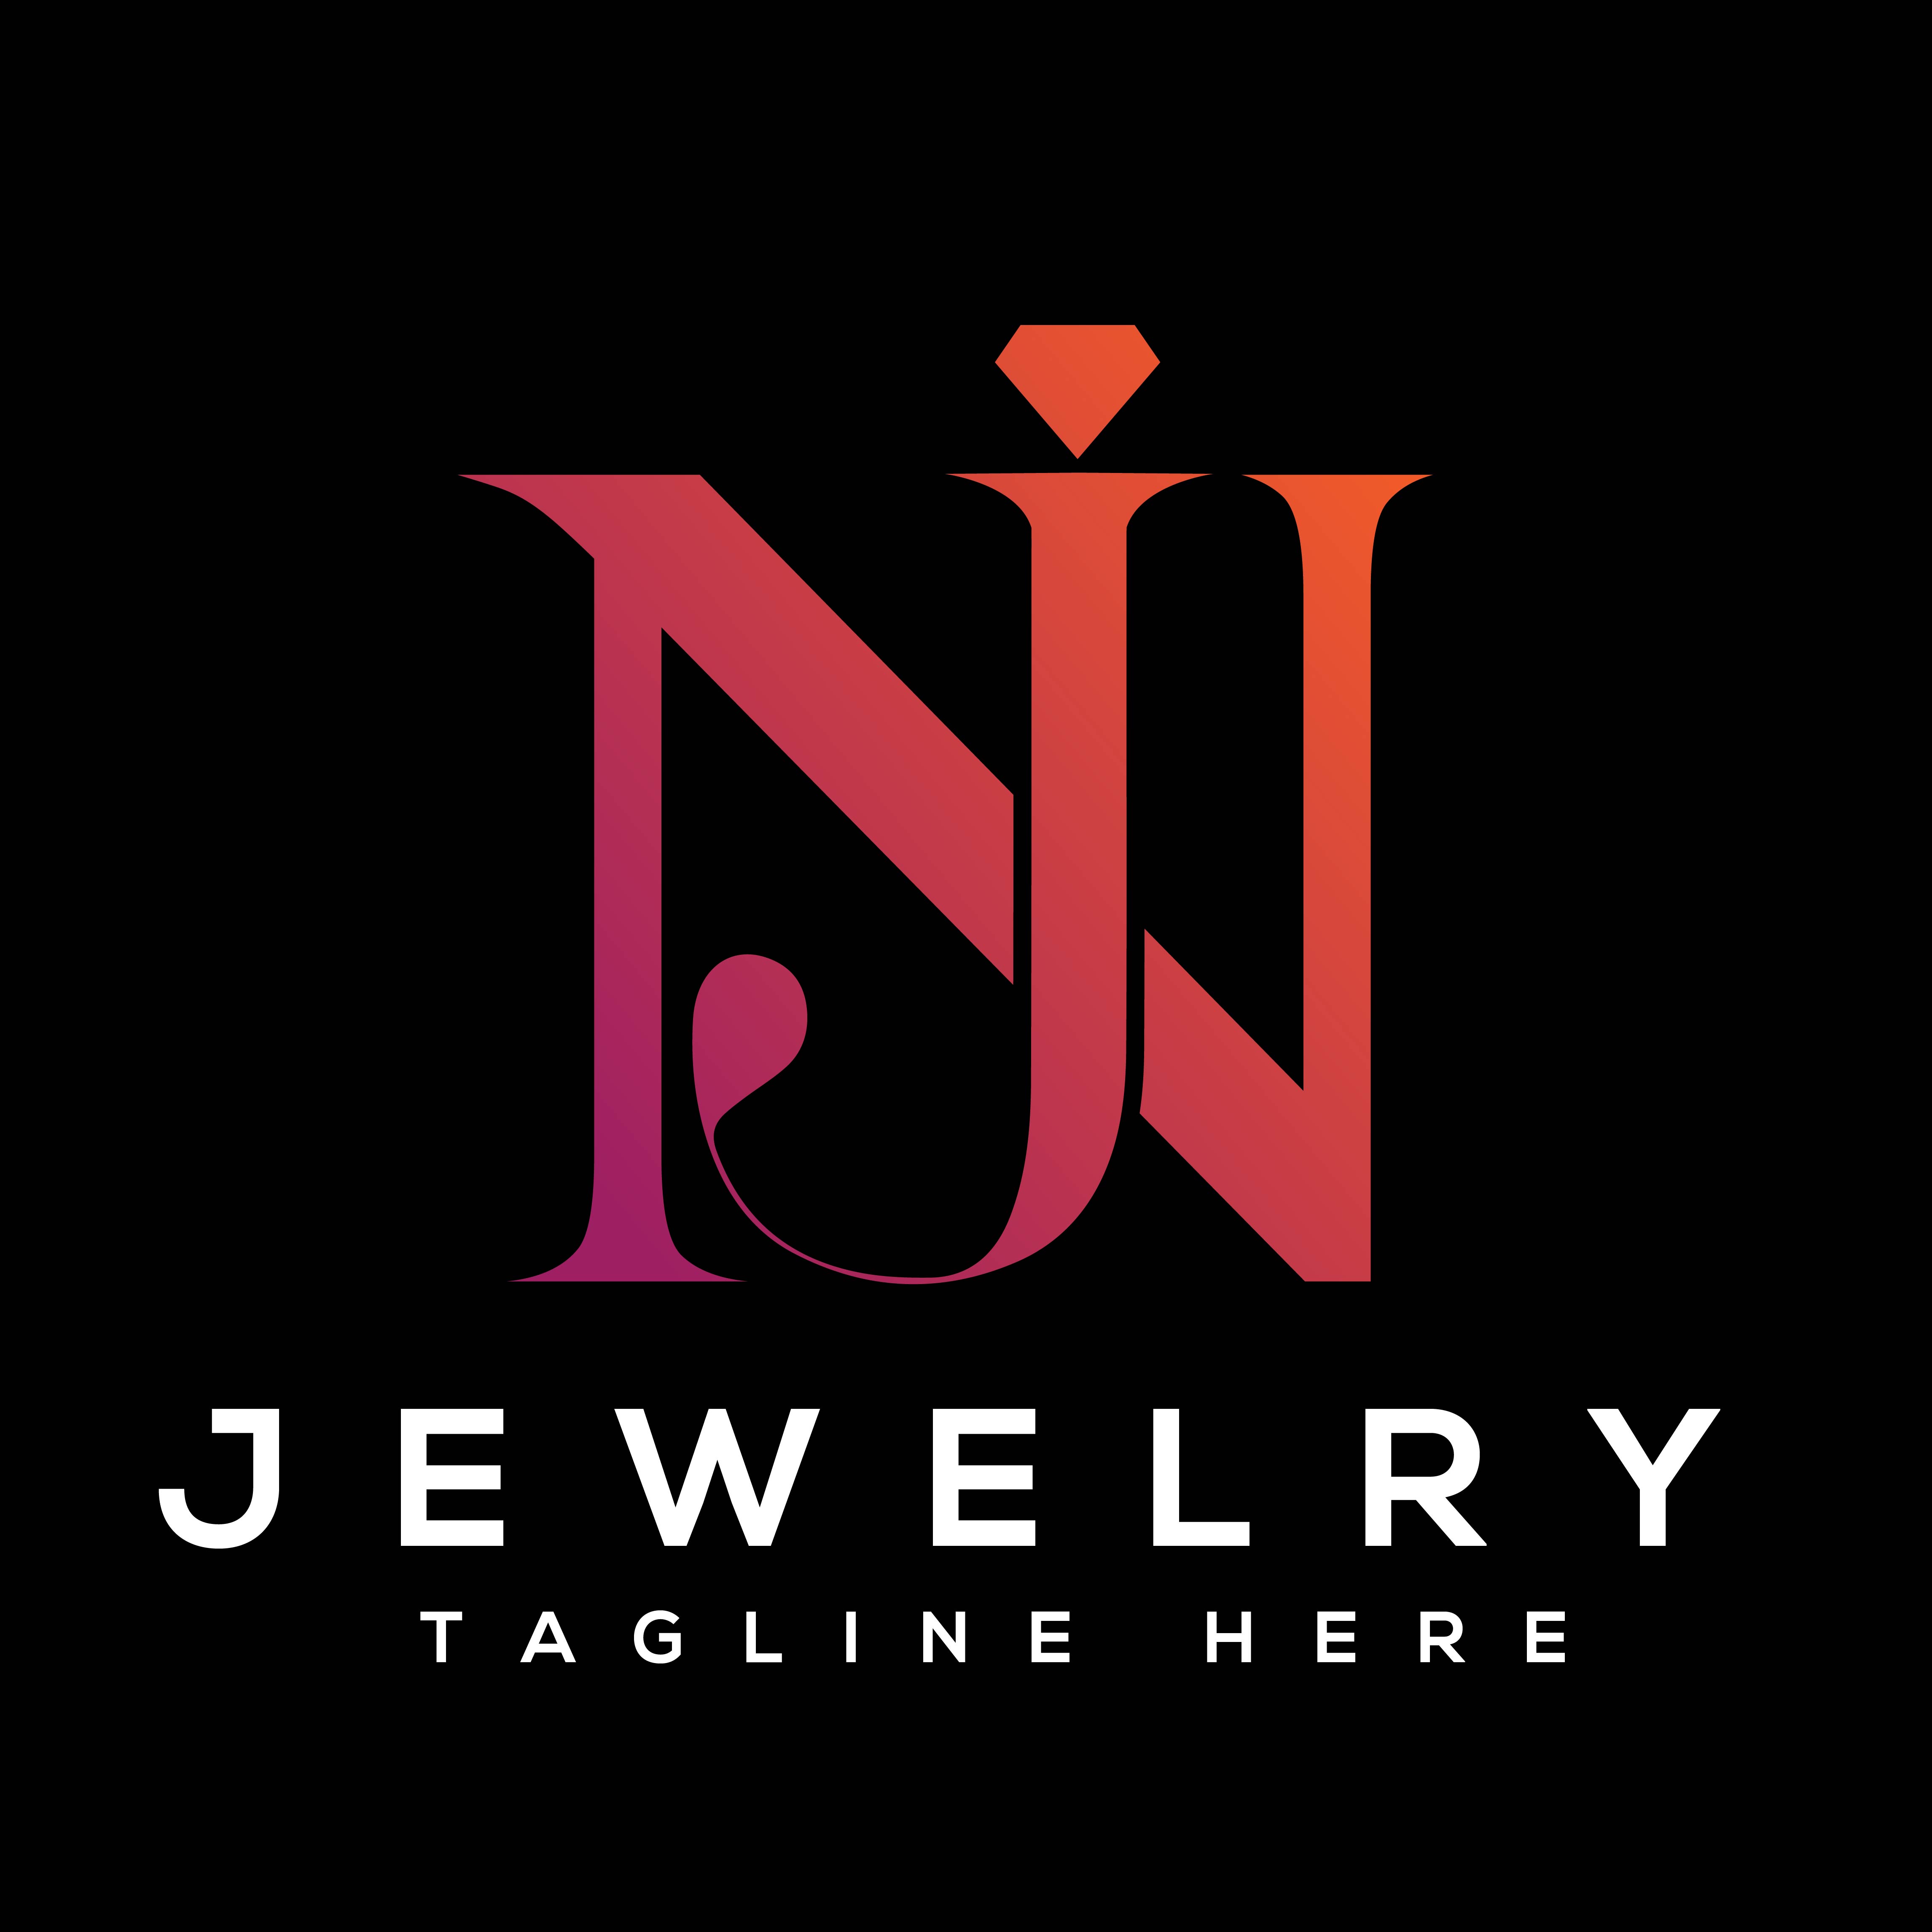 Letter JN Logo Design cover image.